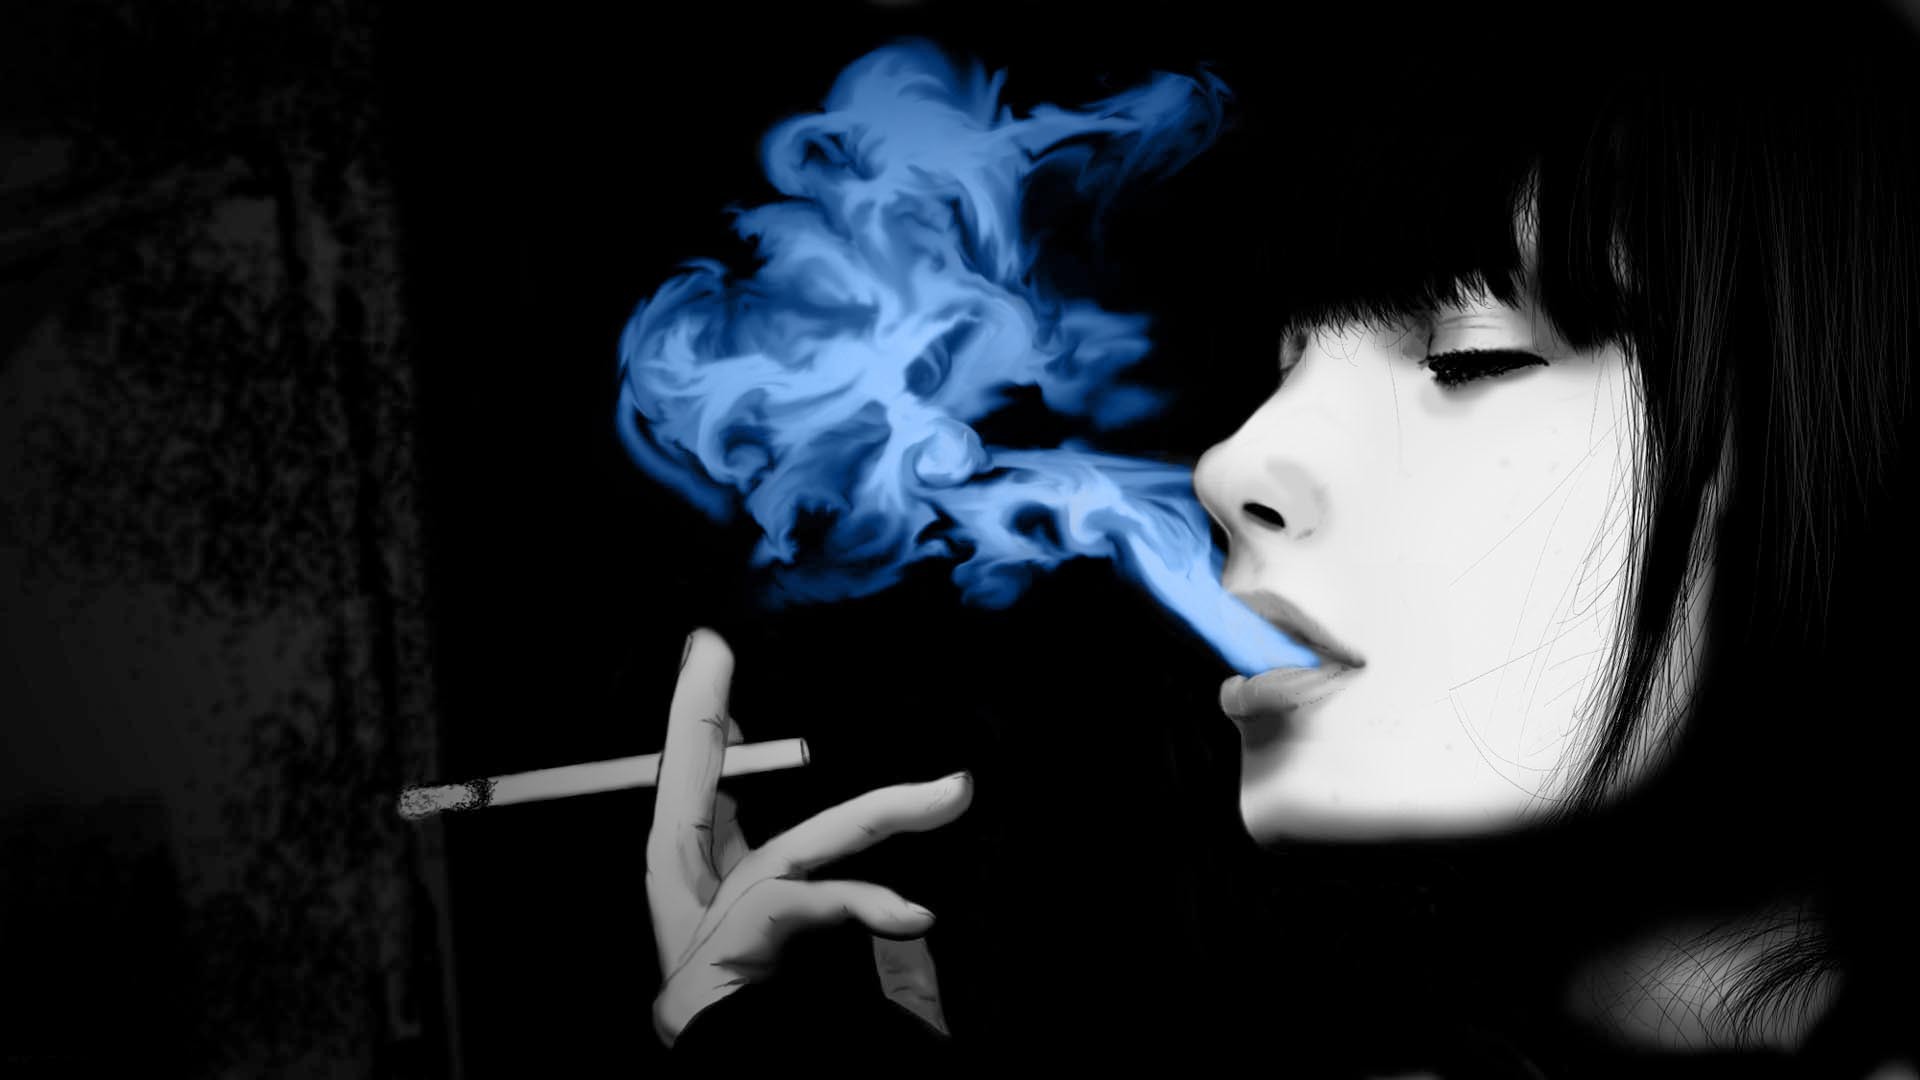 rauchen wallpaper herunterladen,rauchen,rauch,zigarette,dunkelheit,lippe